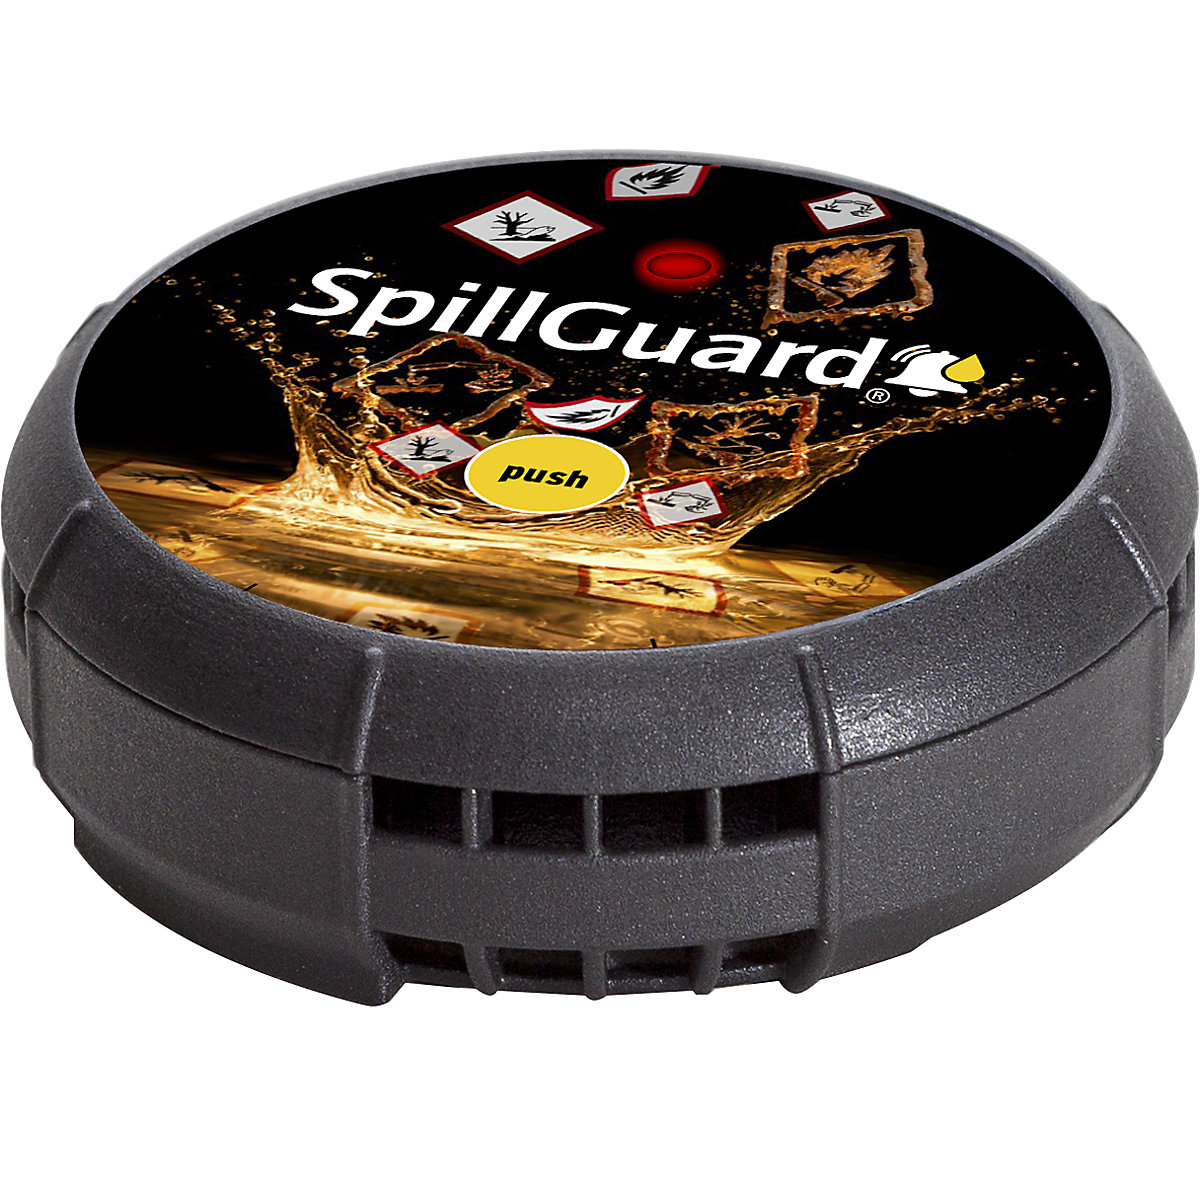 SpillGuard® leak detector